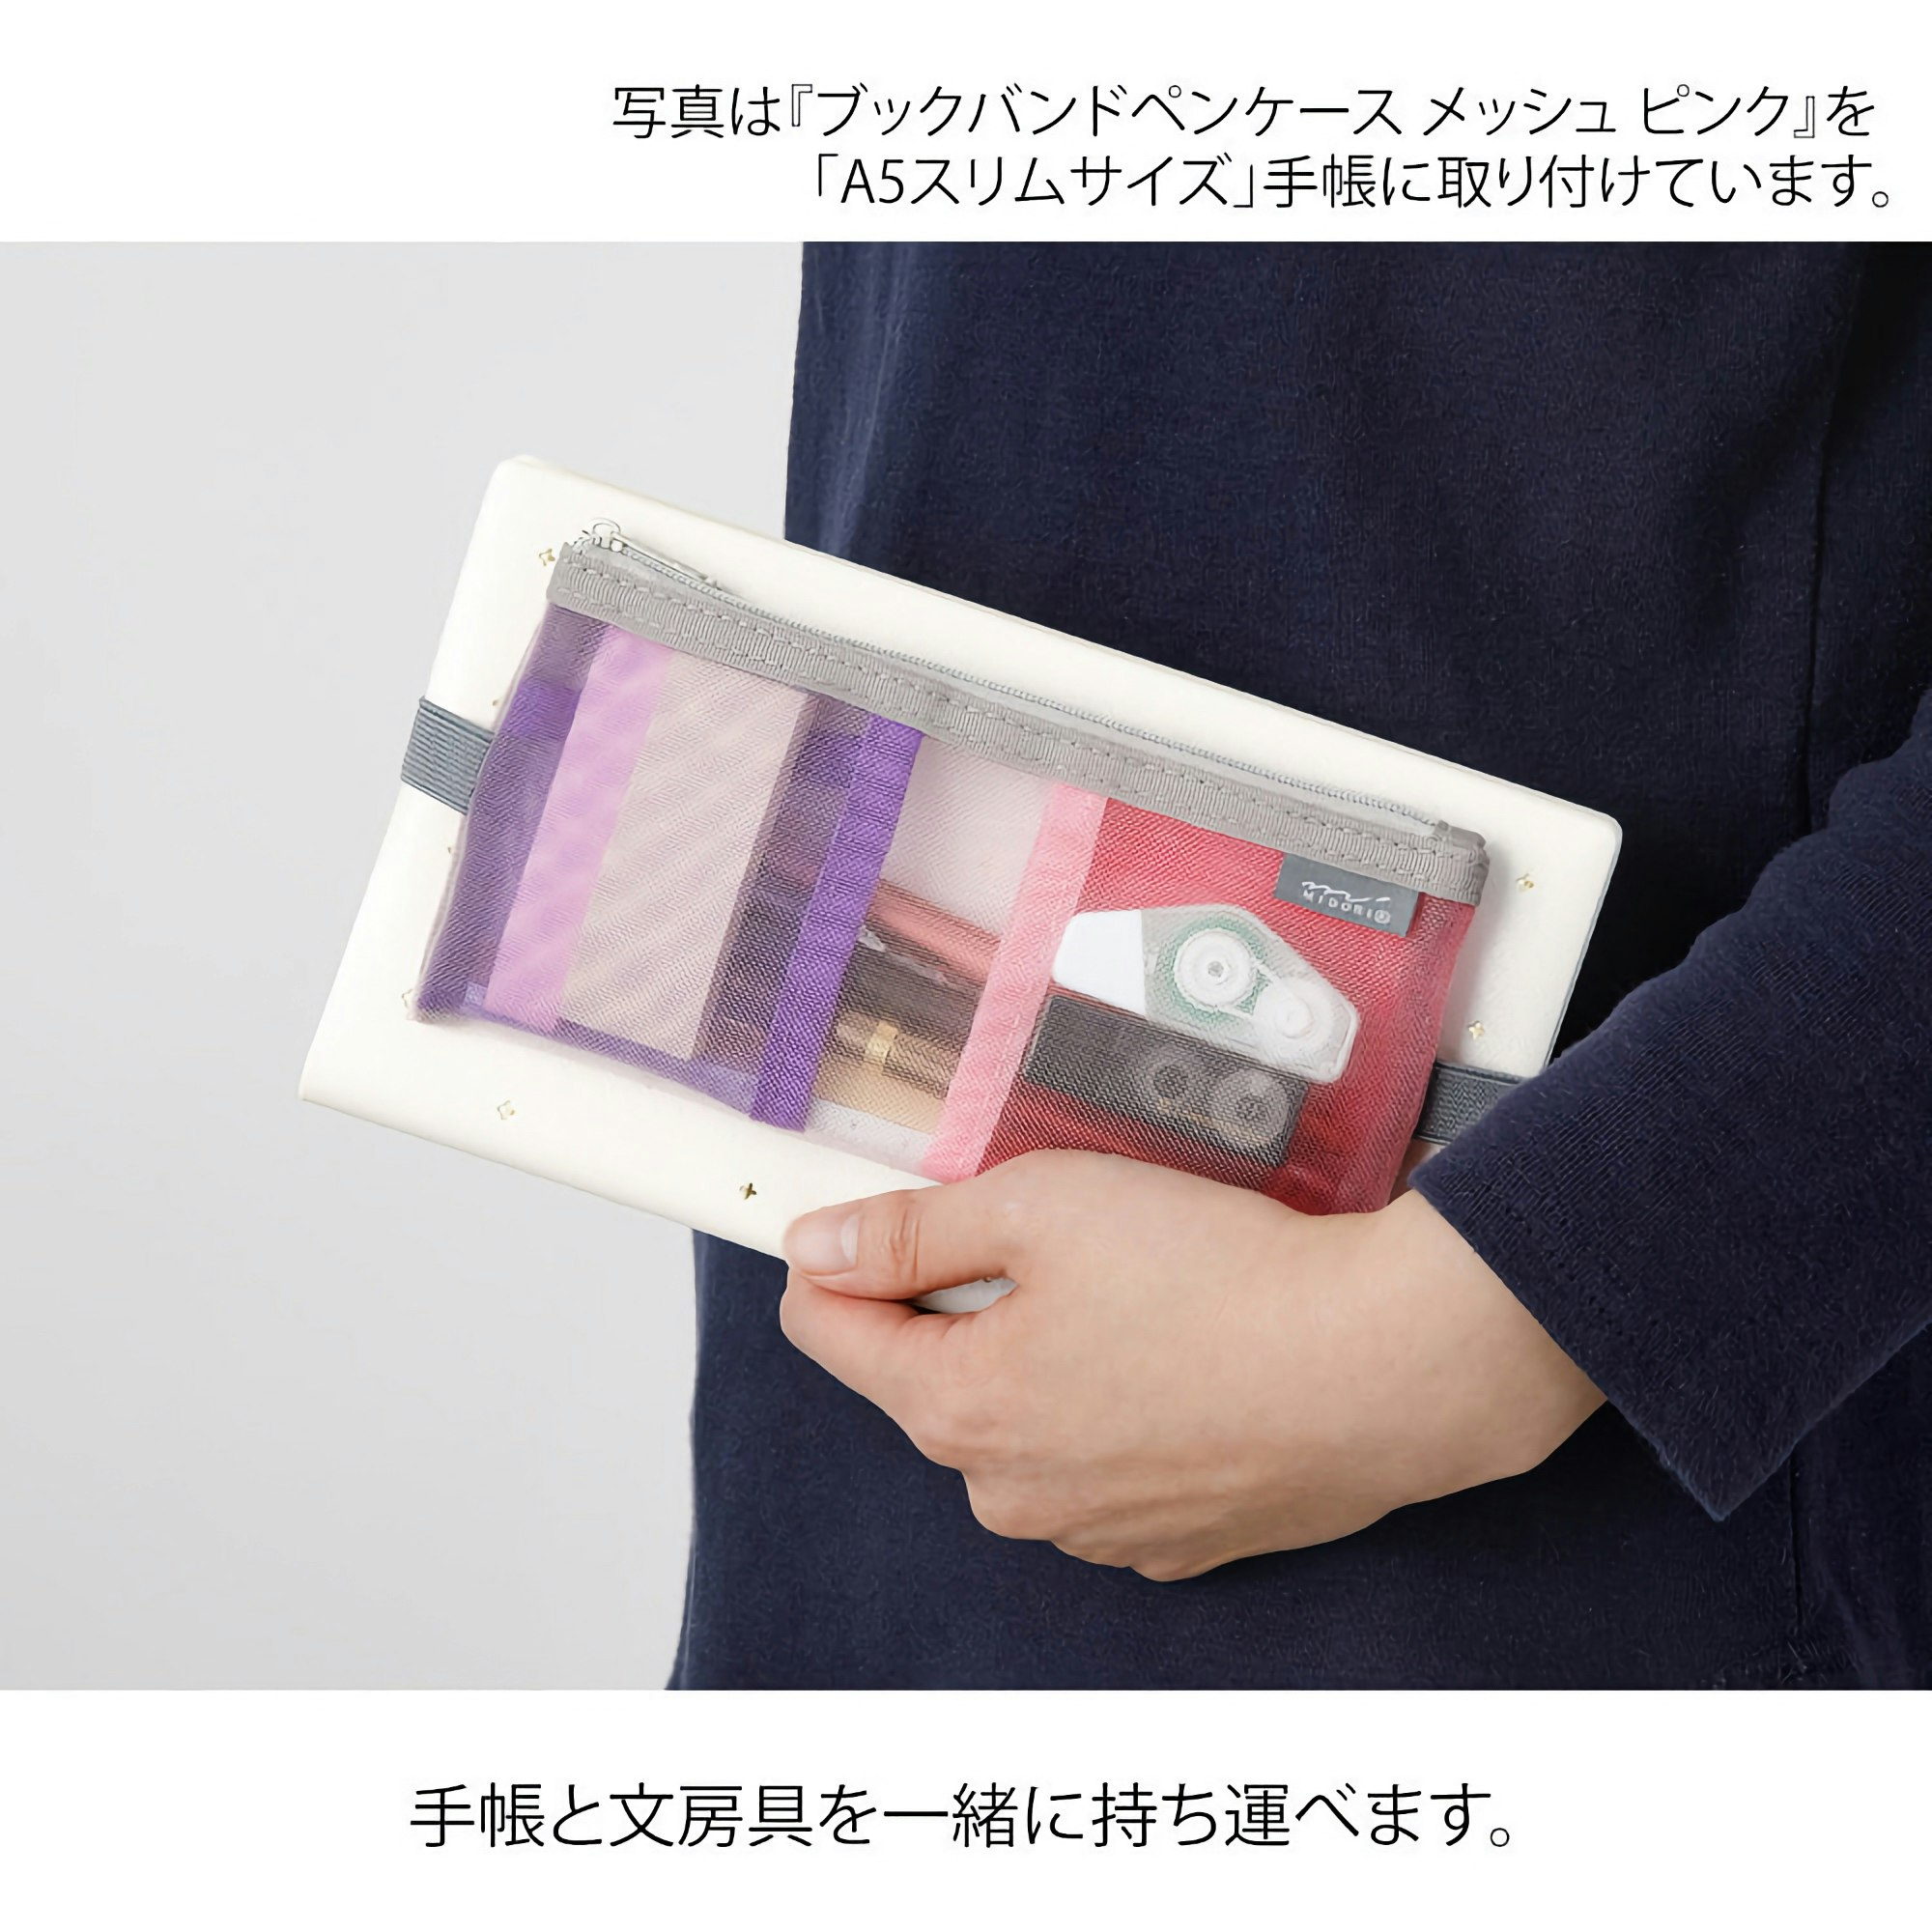 Midori Book Band Pen Case (B6–A5) Mesh Green